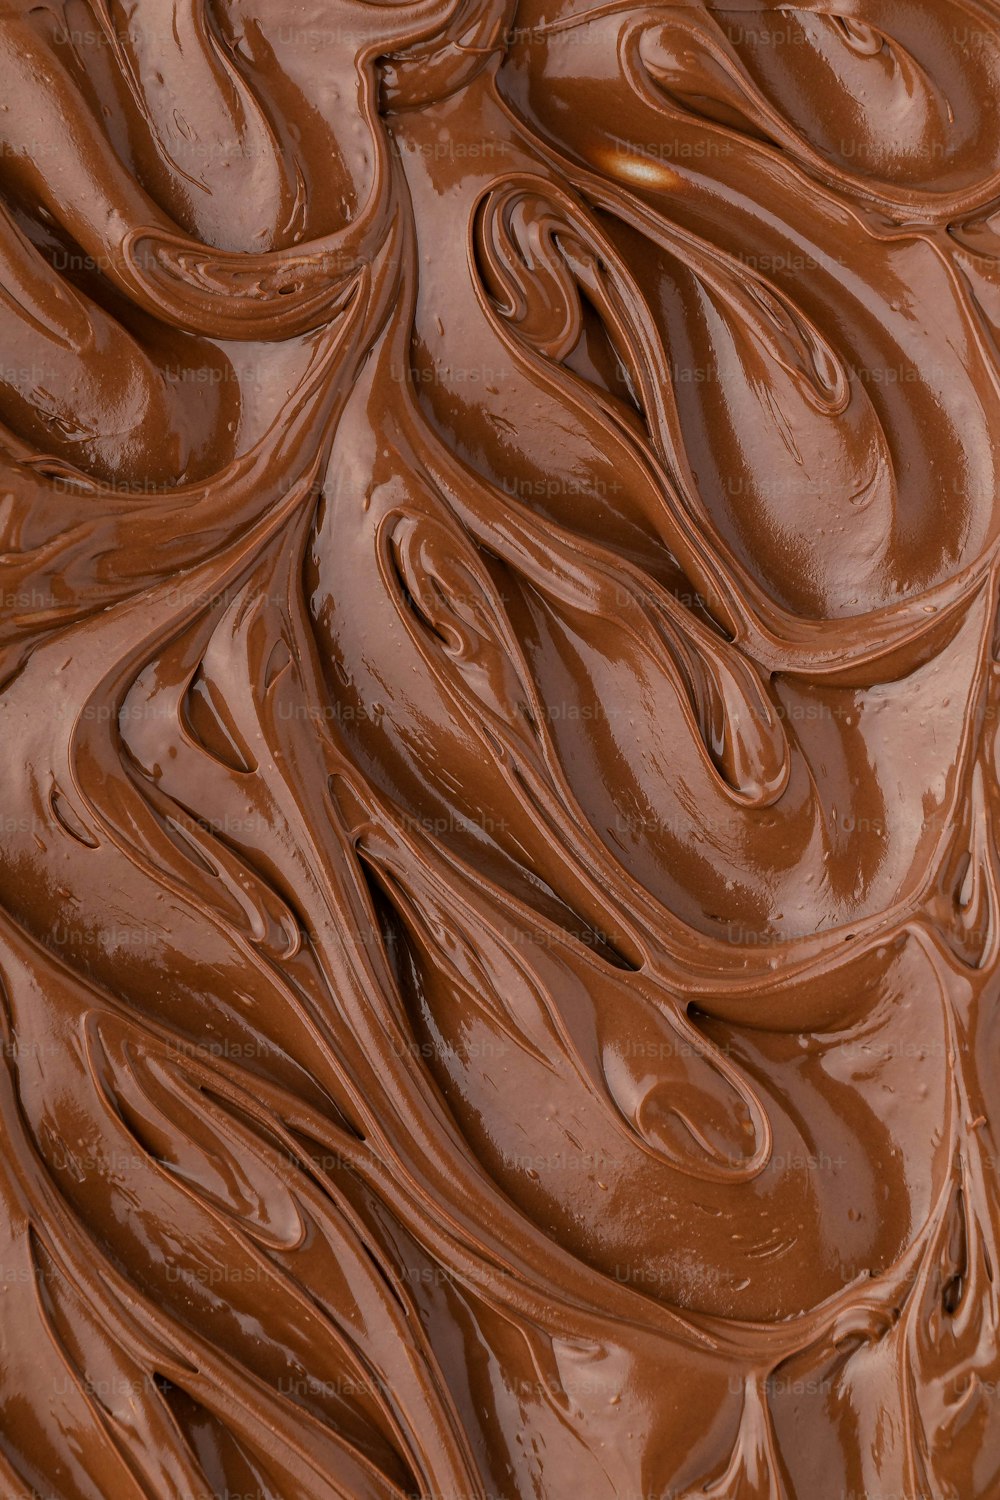 a close up of a chocolate swirl pattern